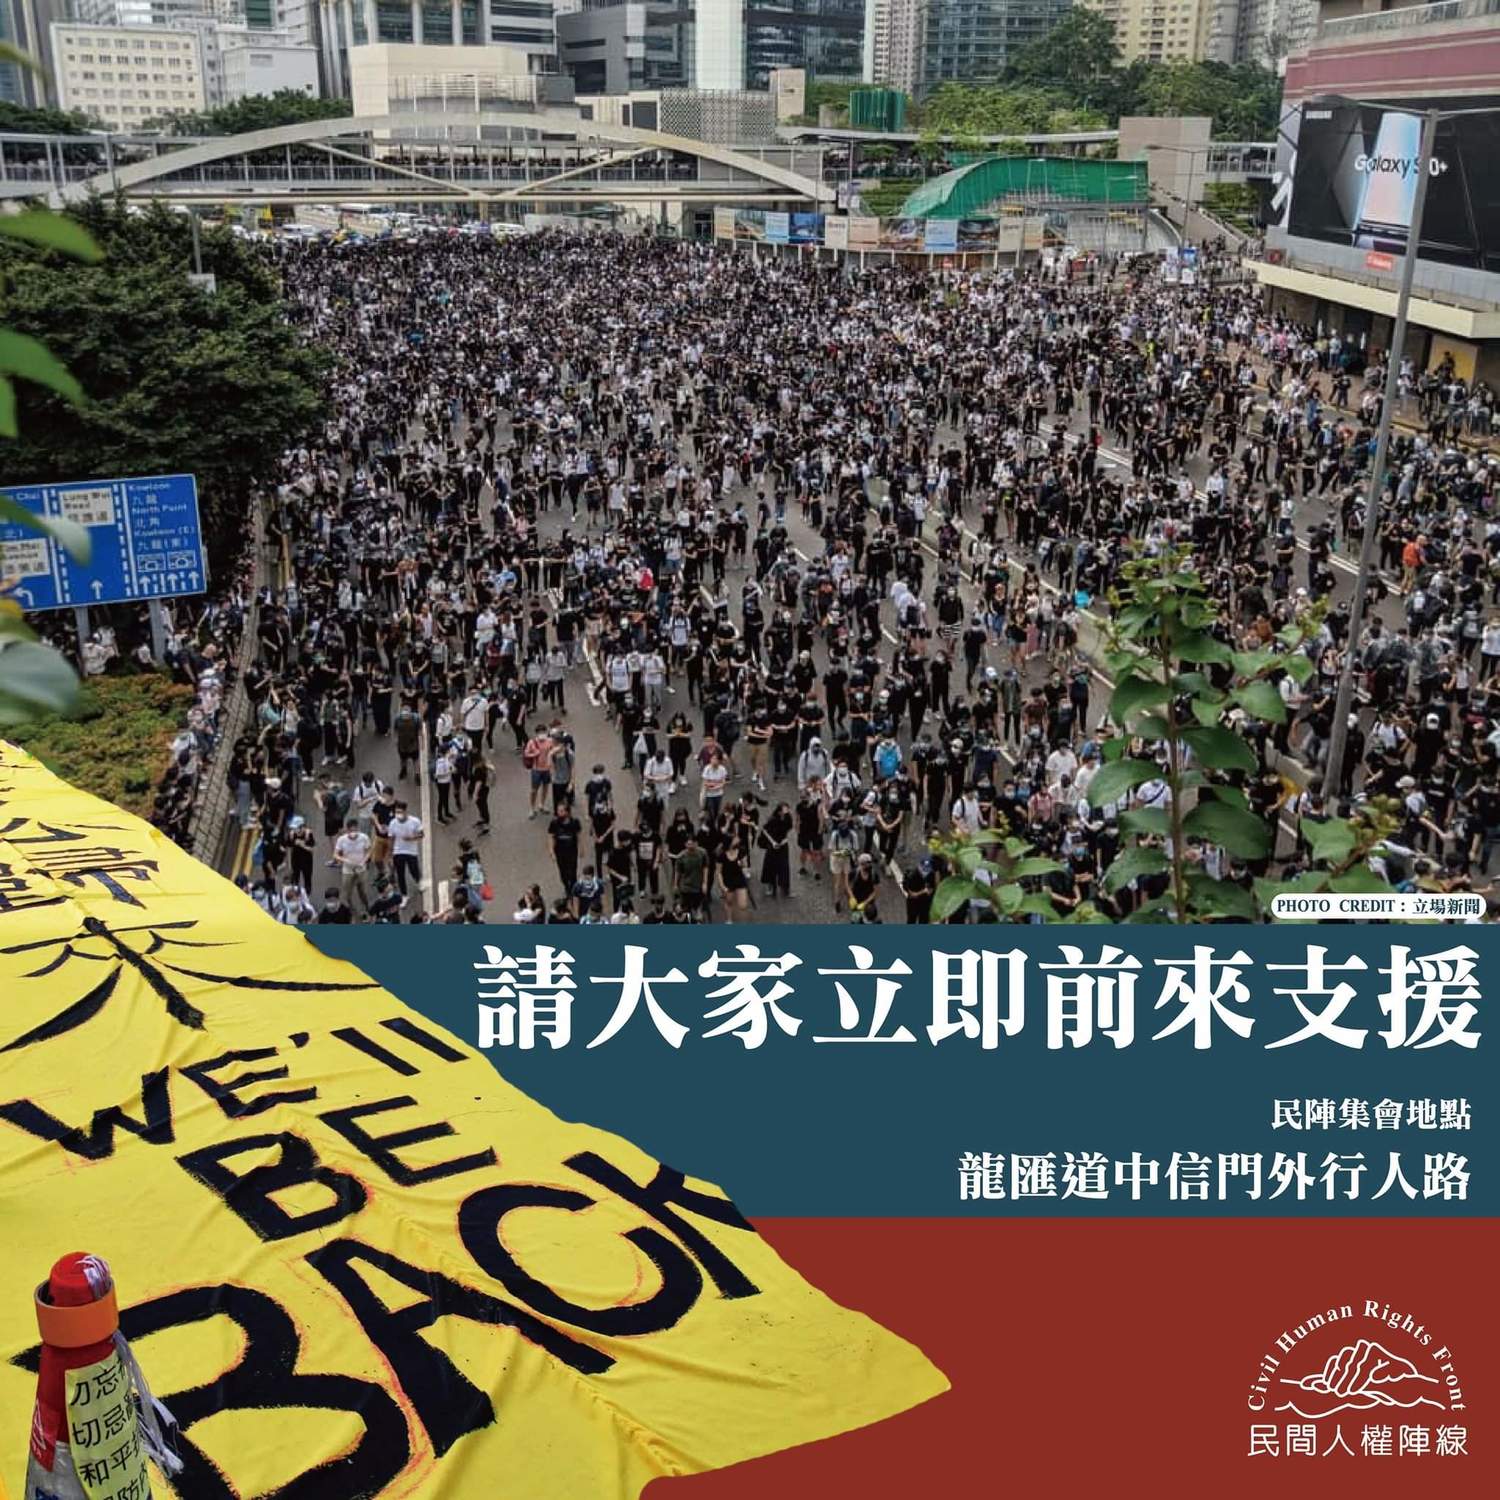 運動 示威 中华人民共和国民主运动